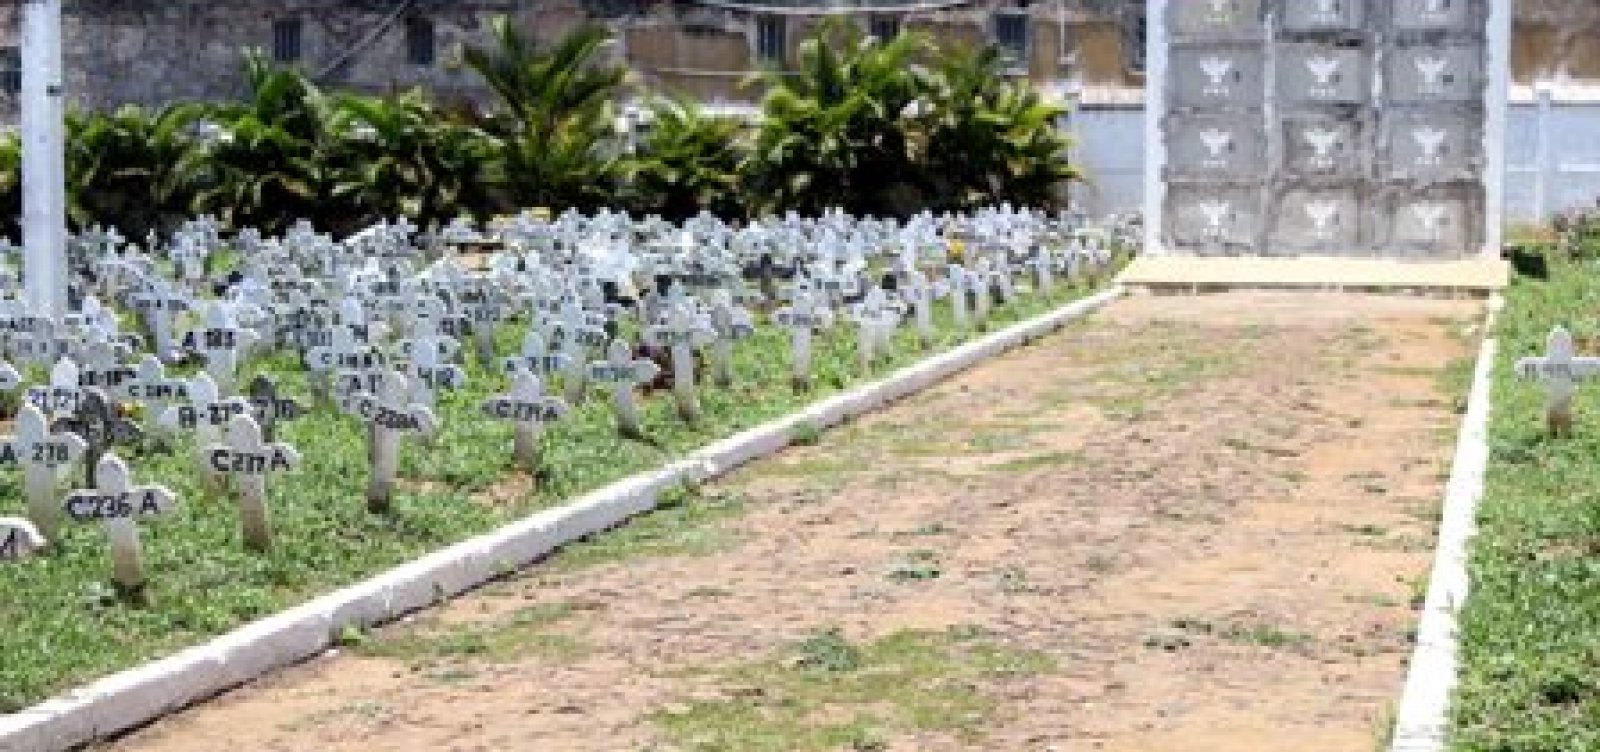 Cemitérios públicos de SSA fizeram 31 sepultamentos por Covid-19 em 3 dias